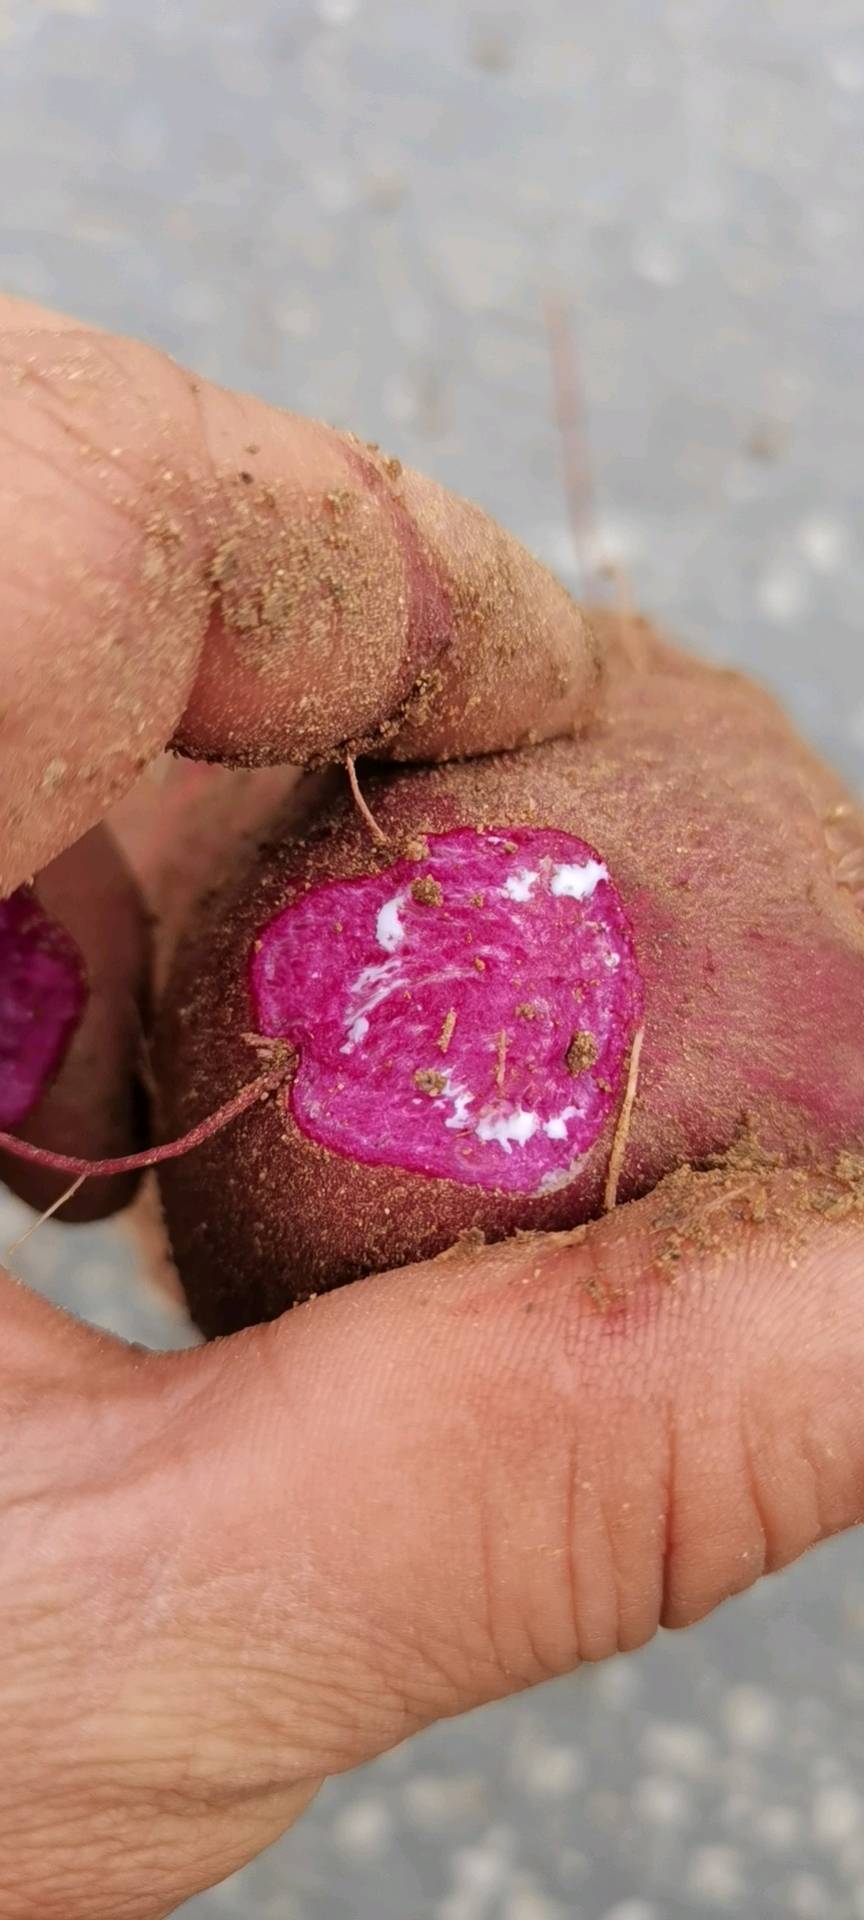 紫薯千亩基地种植 品种有：凌紫 济黑二号，预计九月底十月初可大量上市，量大质优，欢迎实地考察看货洽谈合作。